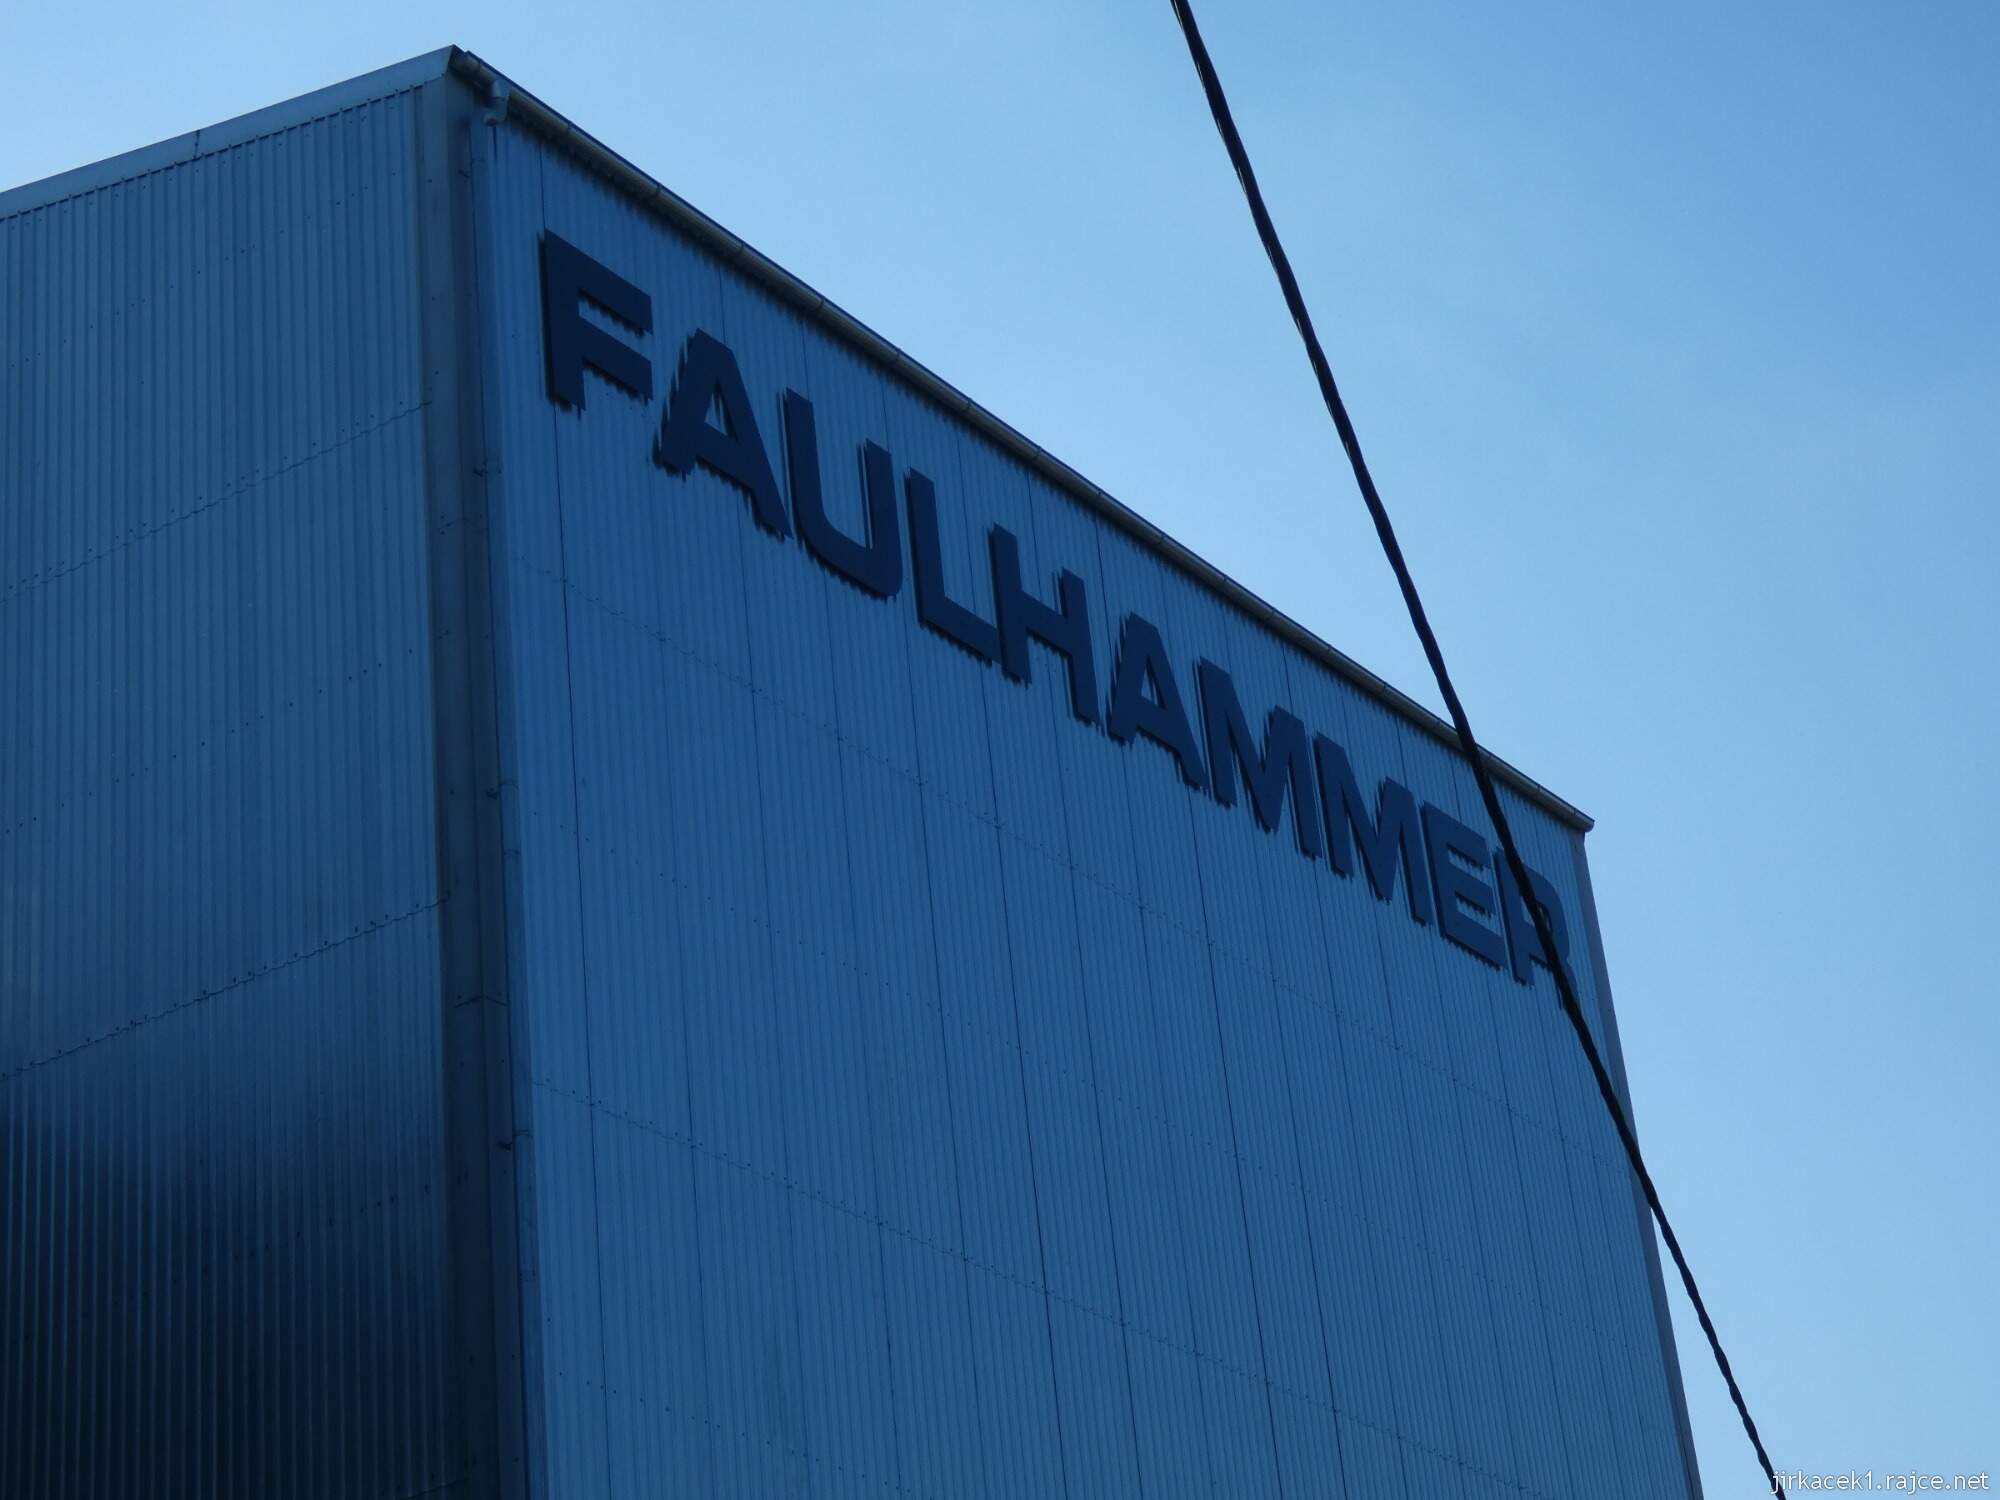 Tržek - Faulhammerův mlýn